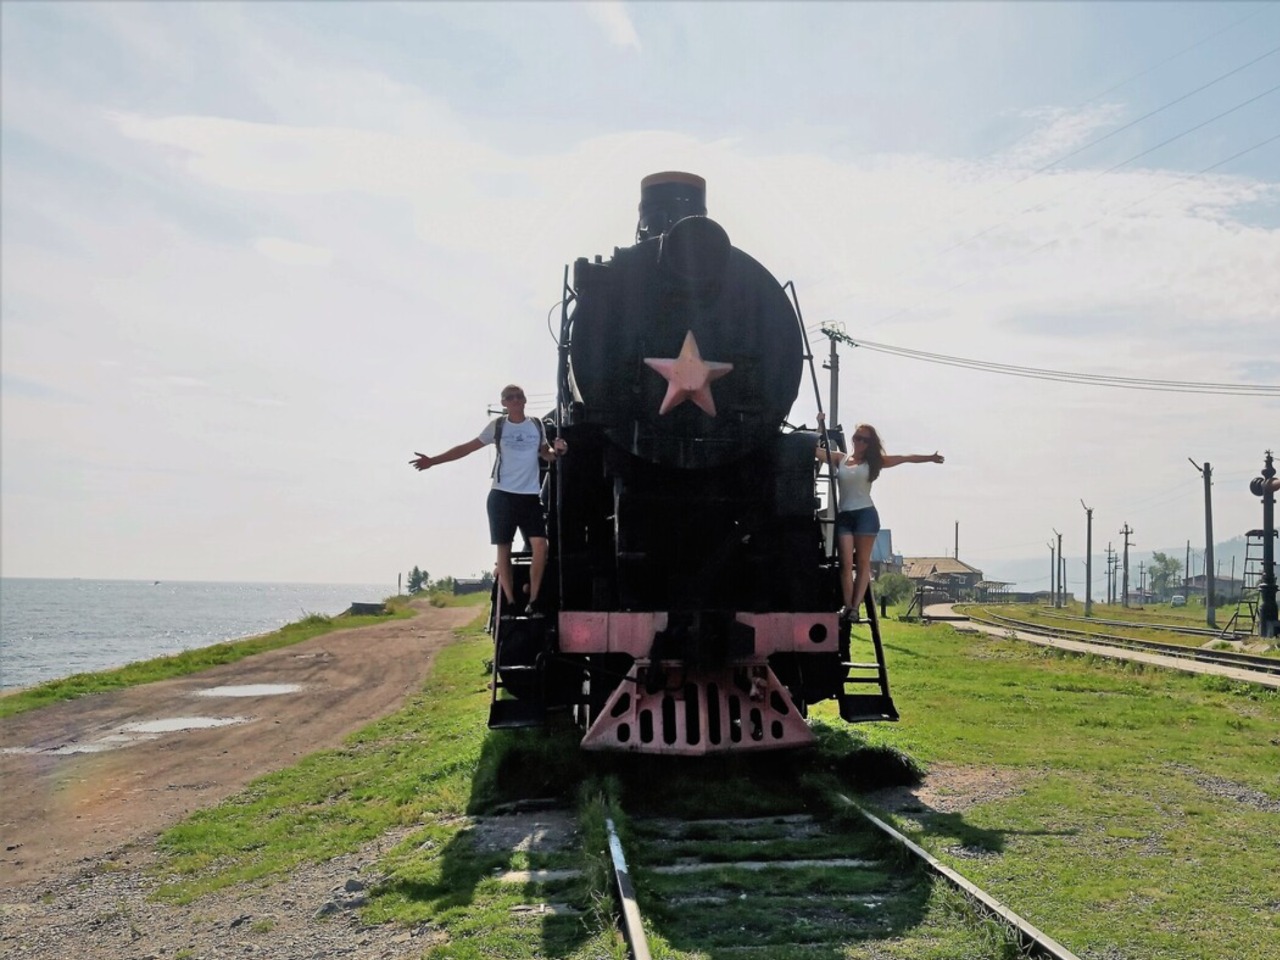 Хайкинг по Кругобайкальской железной дороге | Цена 12000₽, отзывы, описание экскурсии